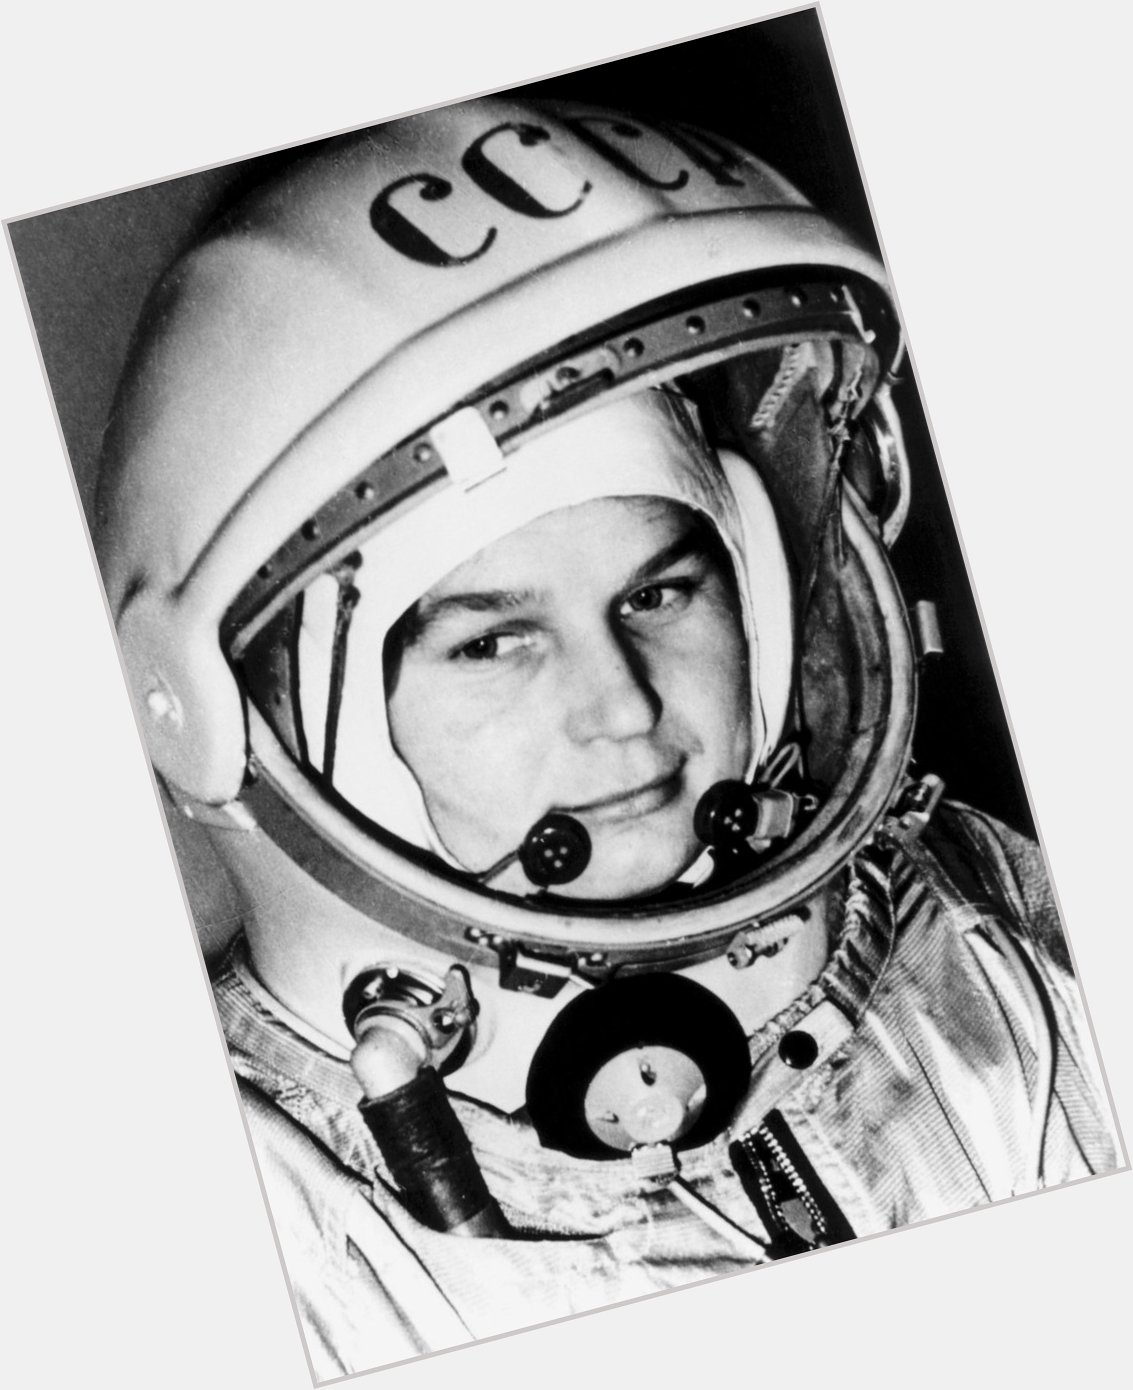 A very happy birthday to Valentina Tereshkova!  